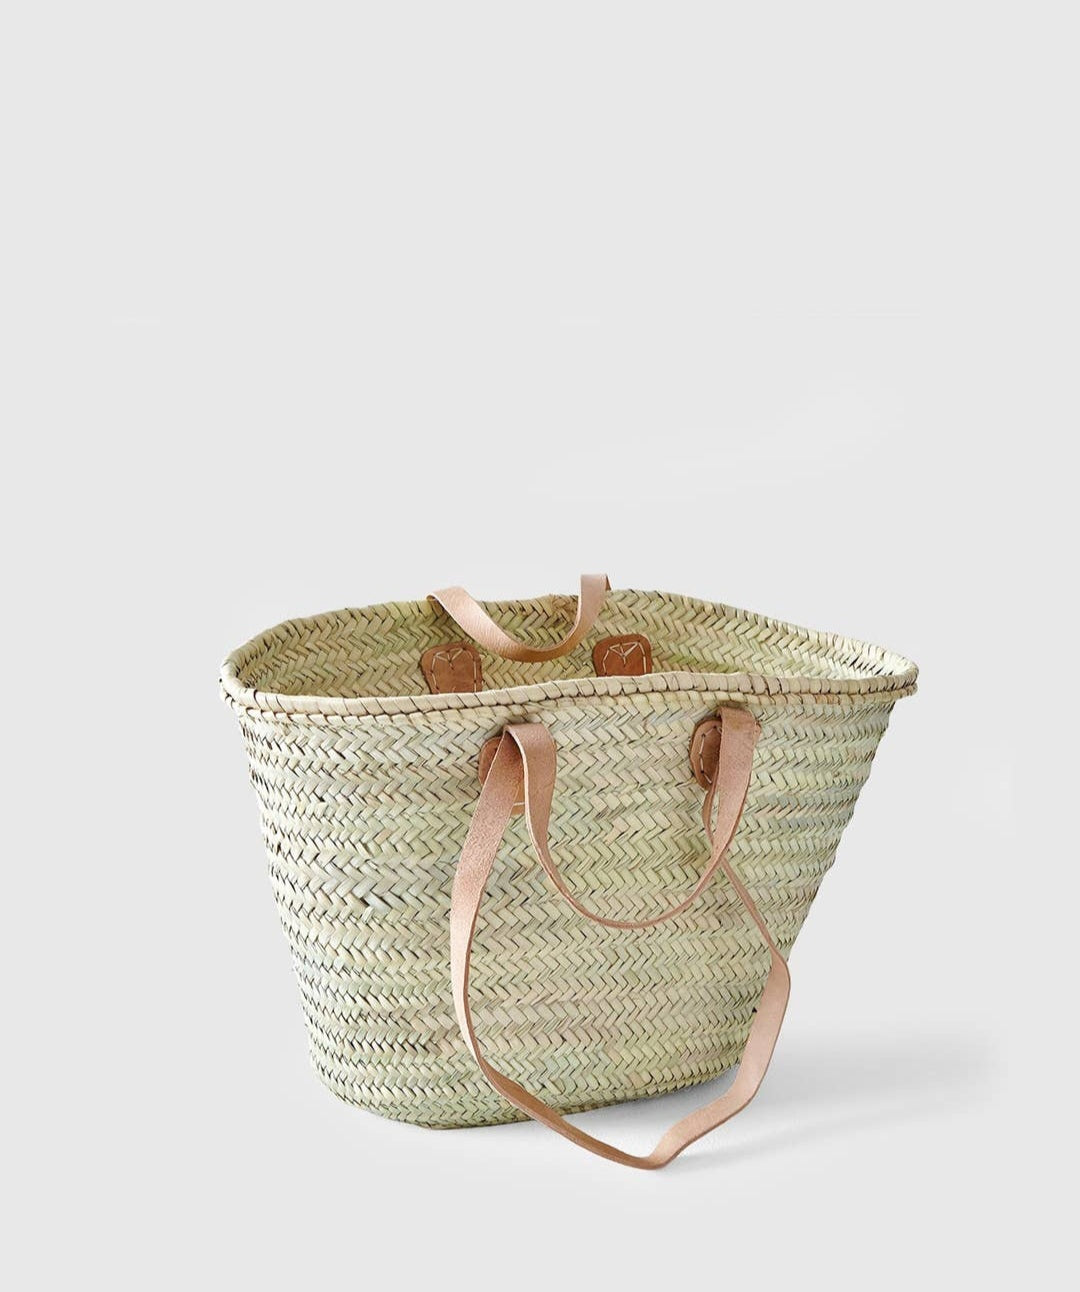 French Market Basket- Large